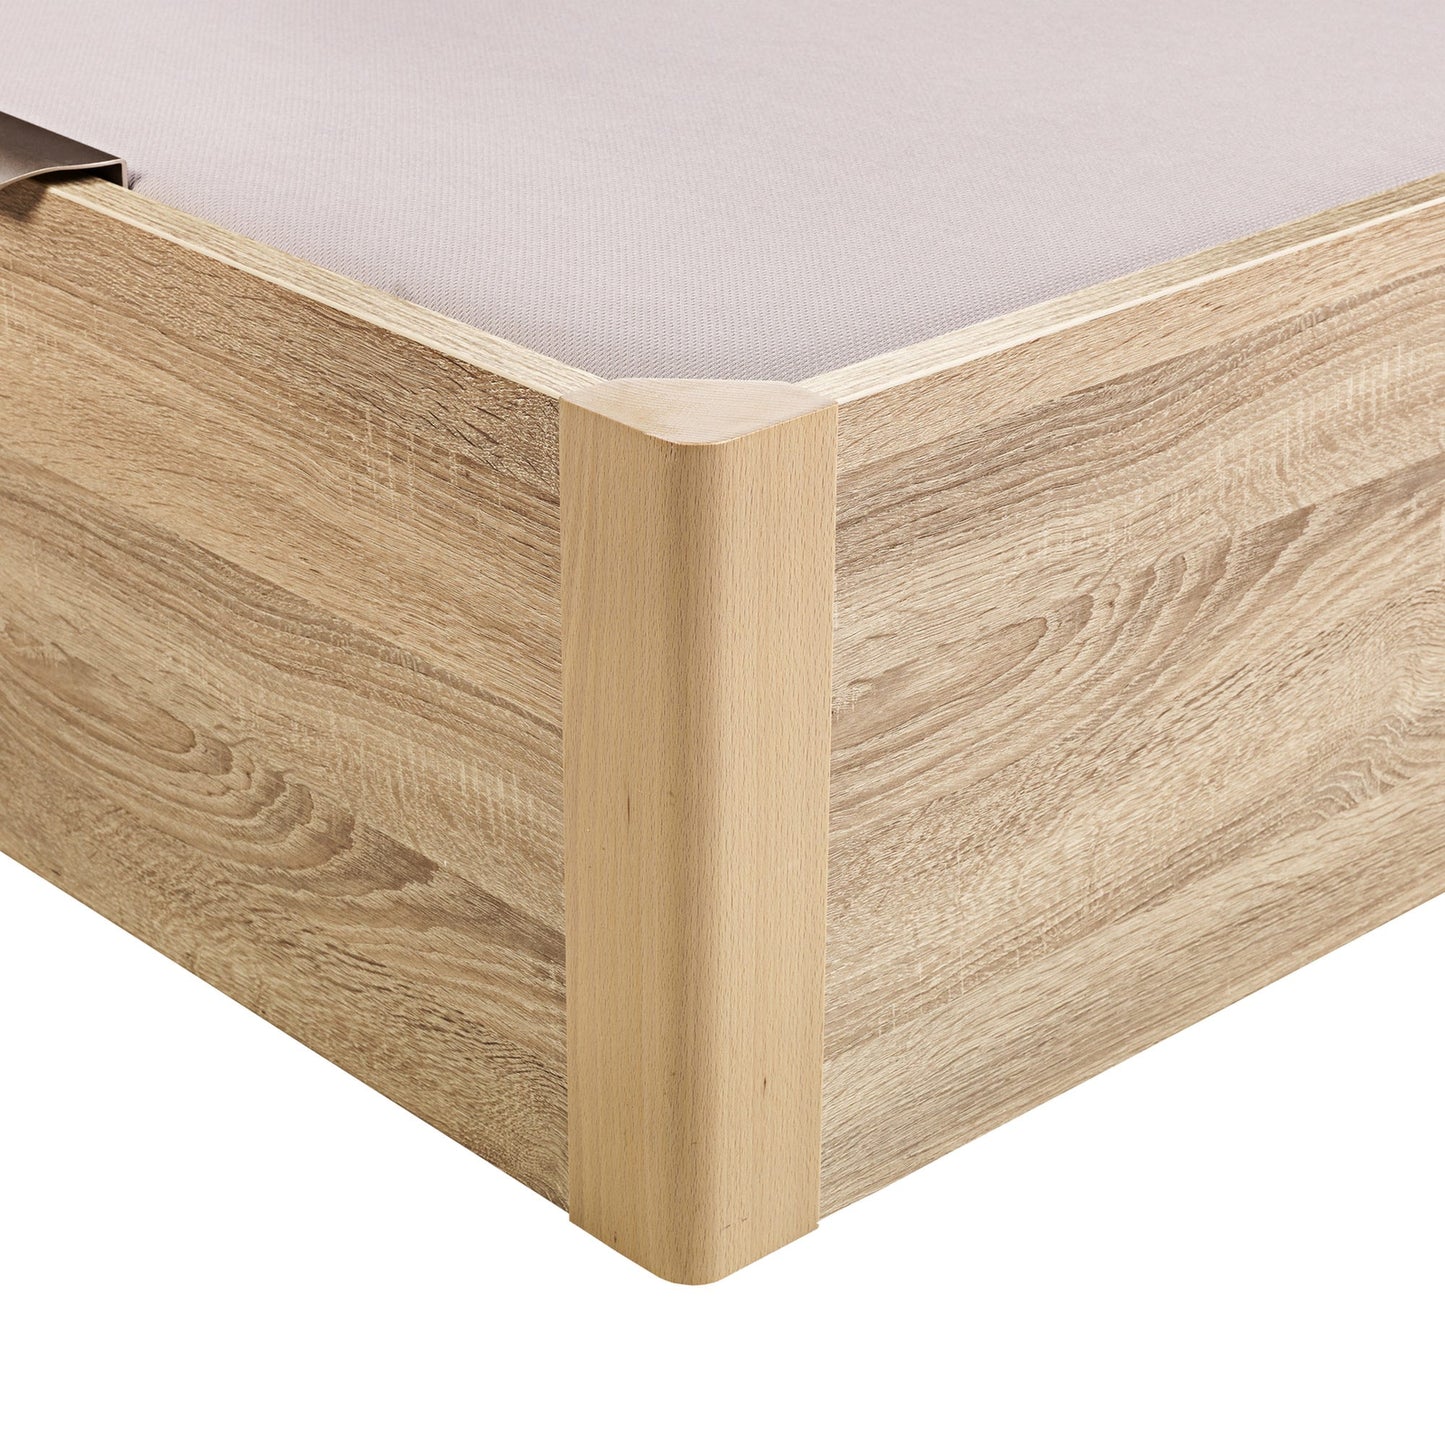 Canapé abatible de madera juvenil de color natural - DESIGN JUV - 105x182